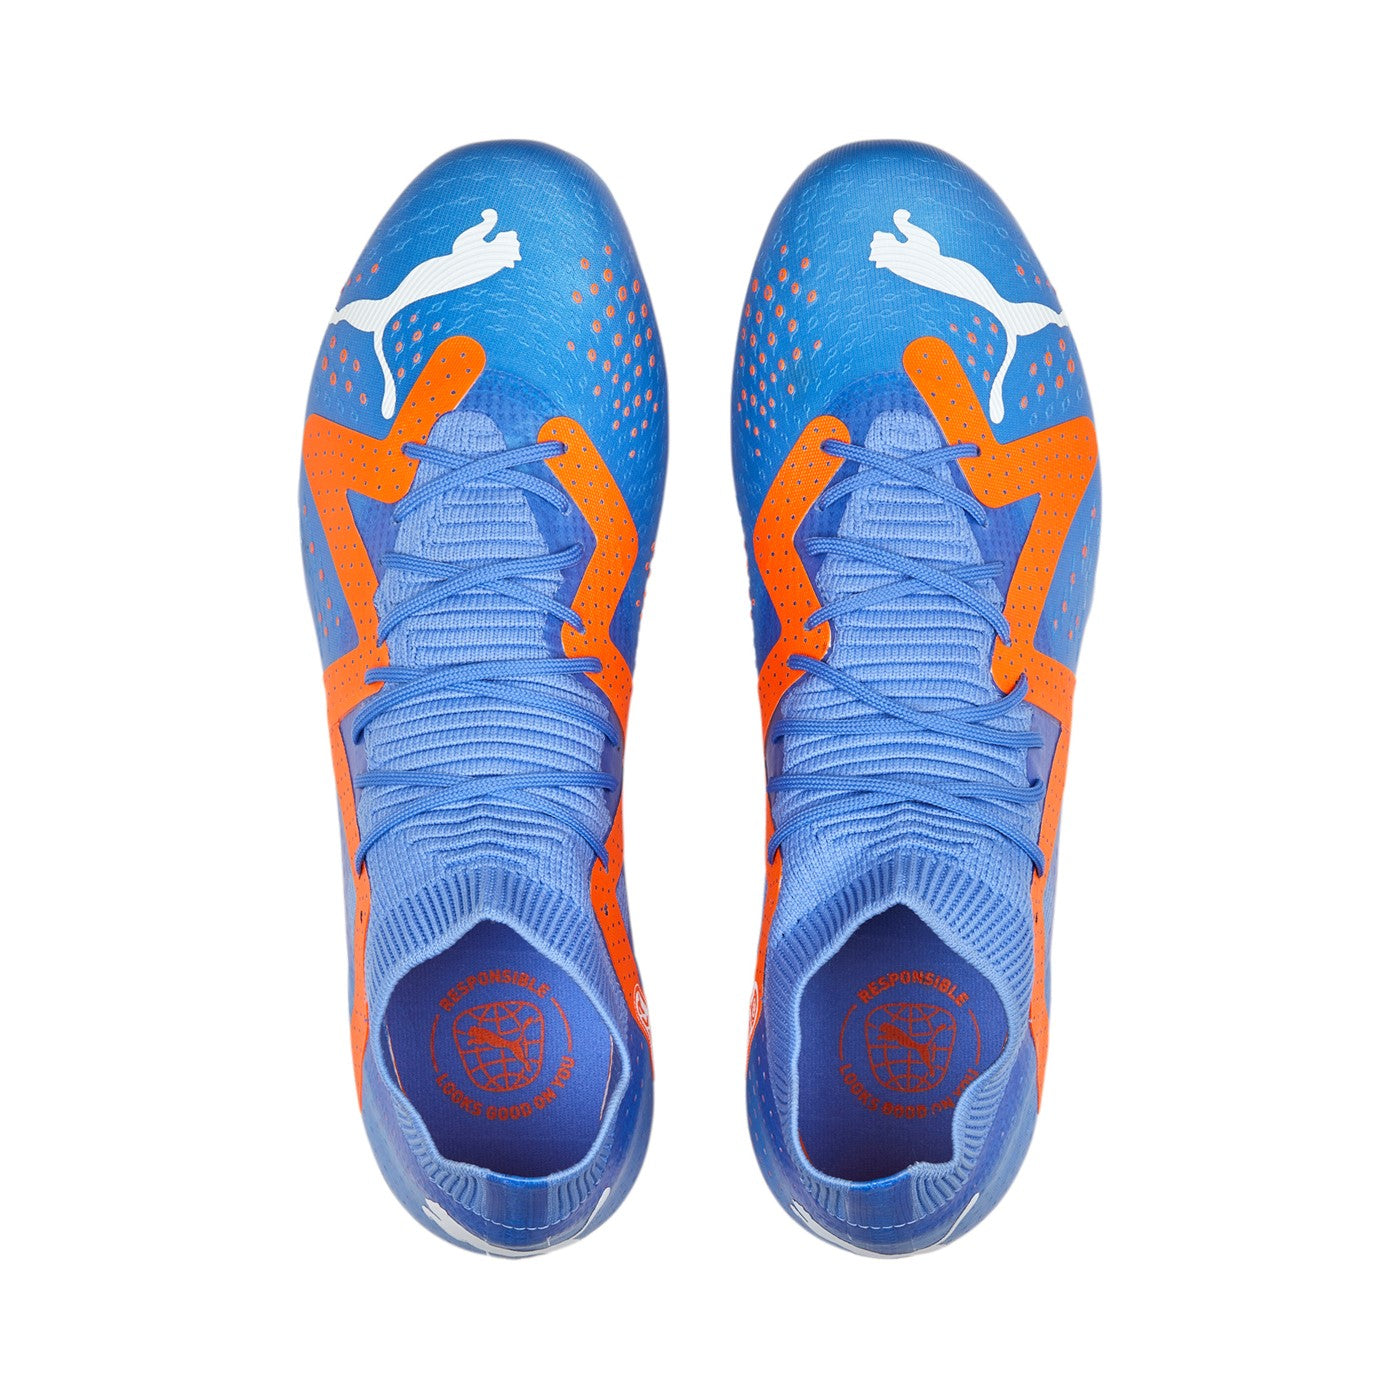 Puma scarpa da calcio da uomo con tacchetti a forma mista Future Match FG/AG 107180 01 blu-arancio